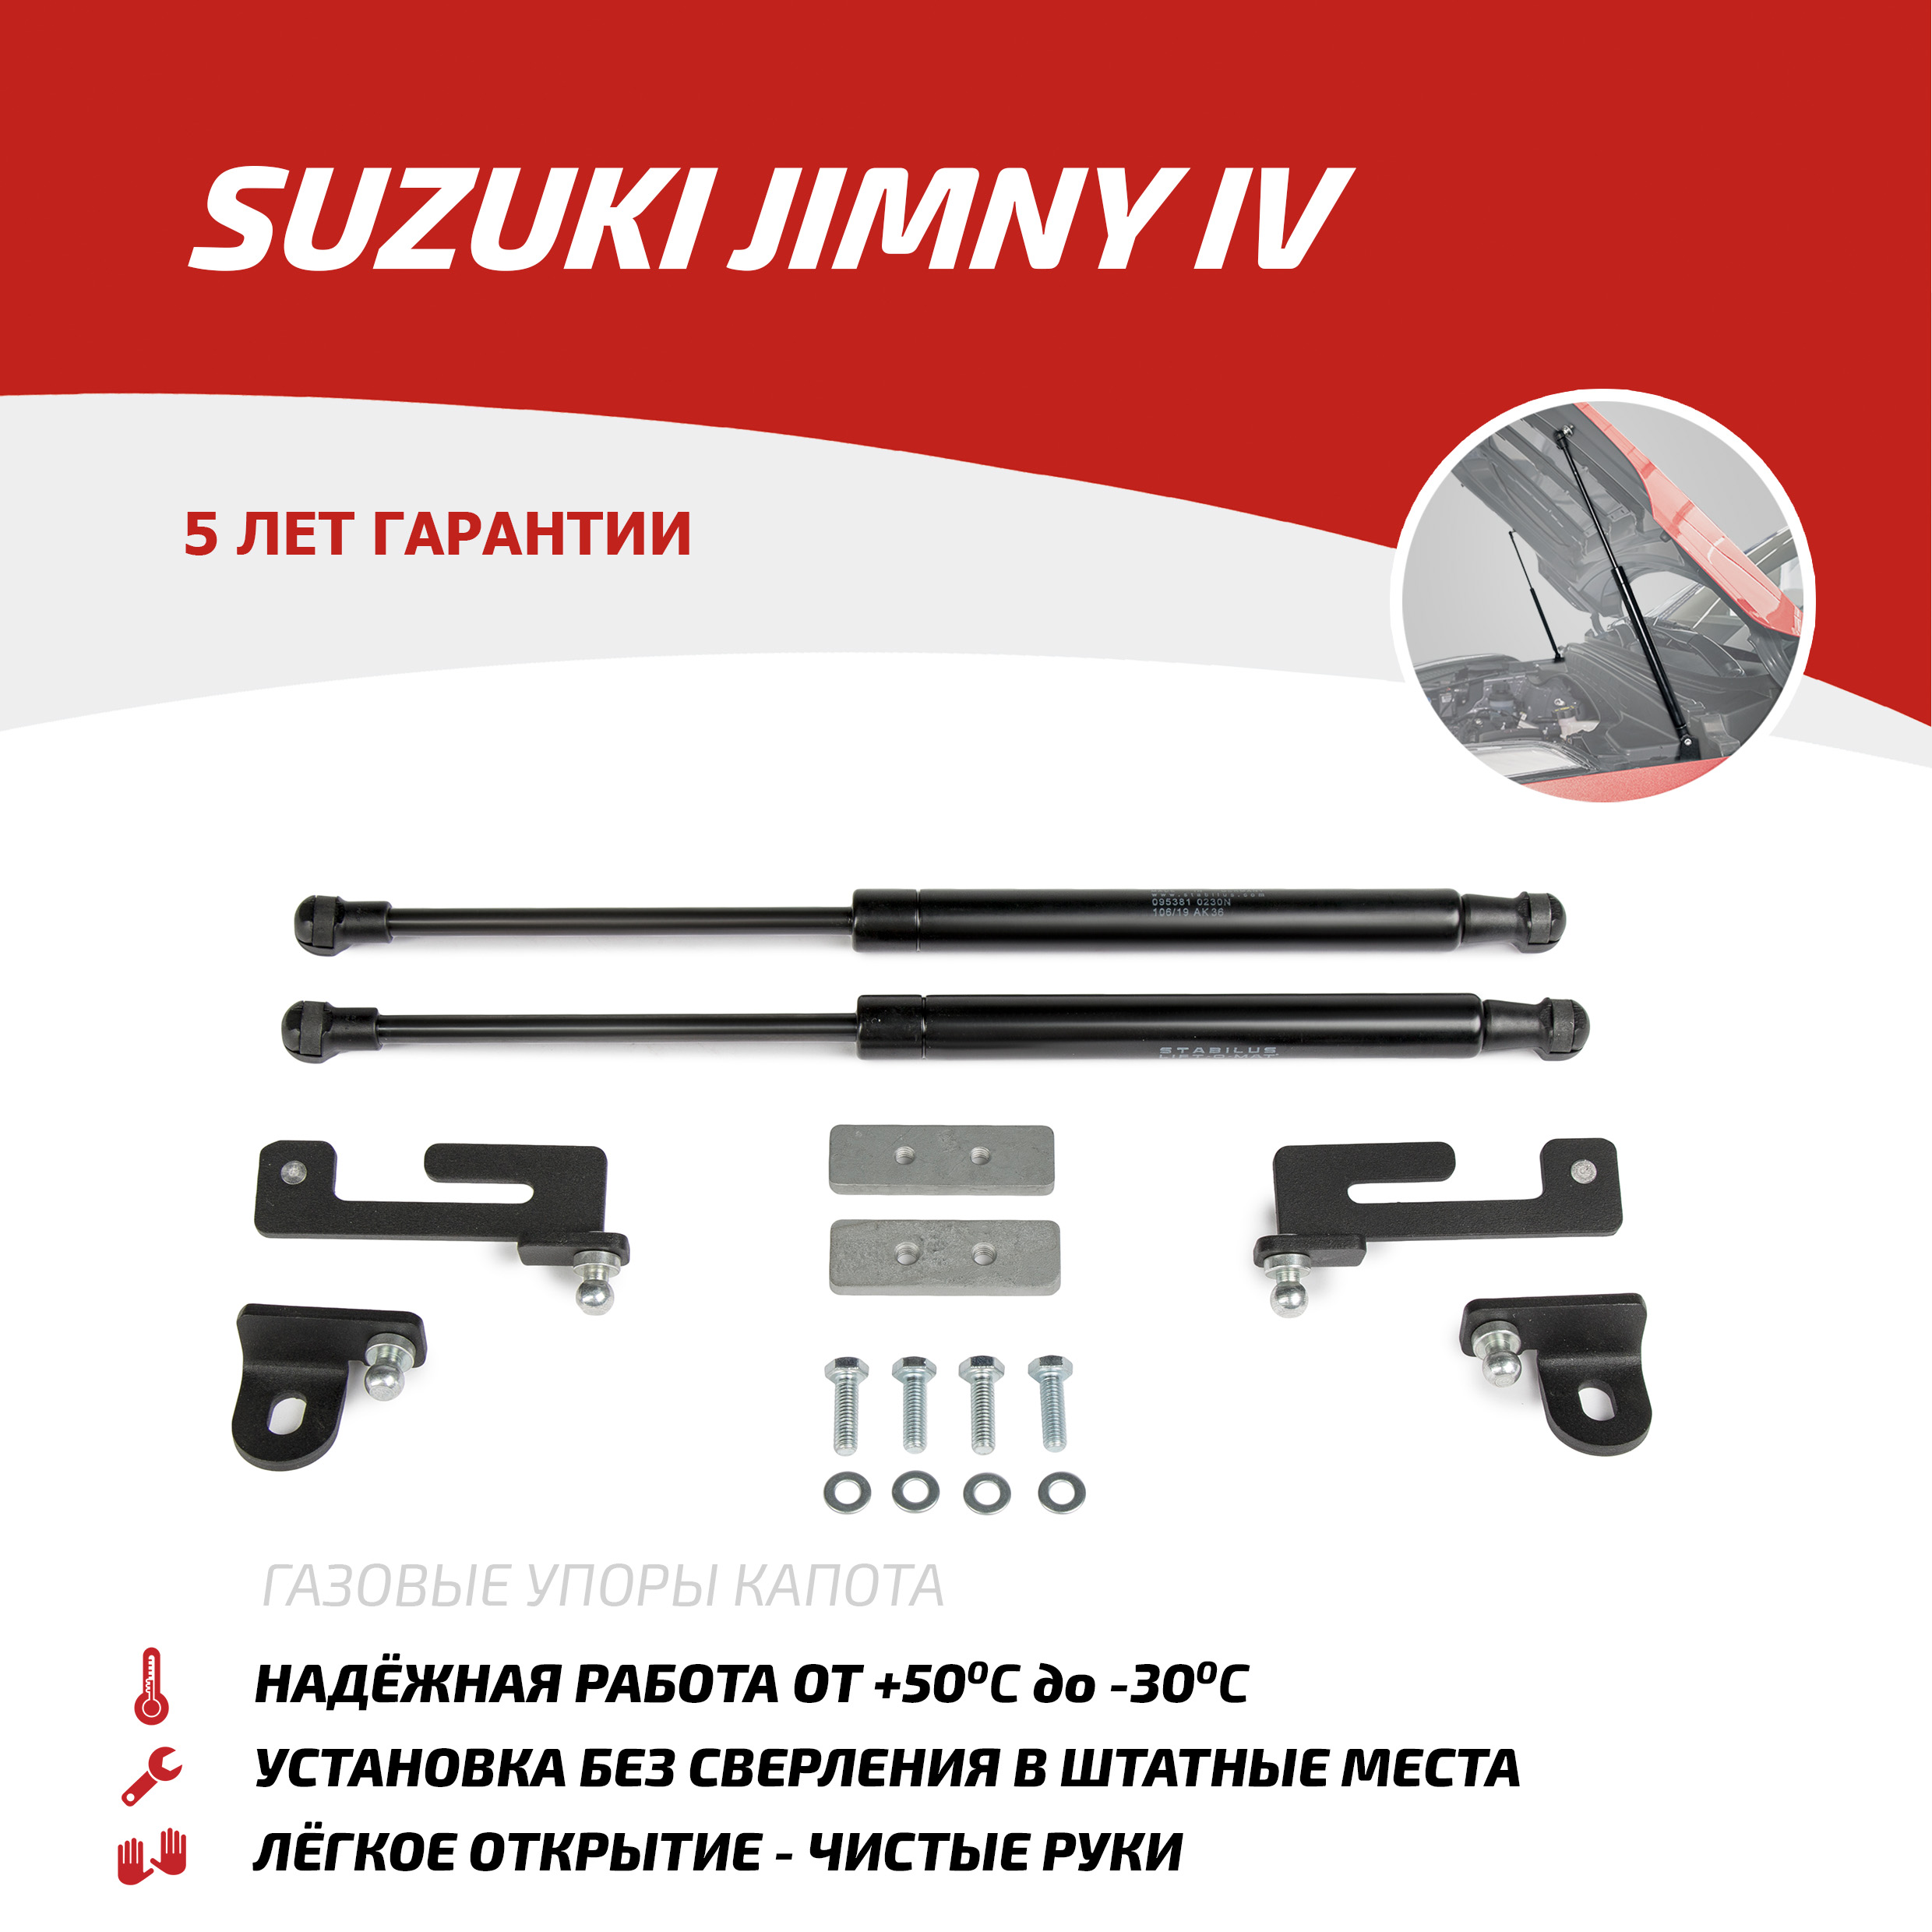 Газовые упоры капота АвтоУпор для Suzuki Jimny IV 2019-н.в., 2 шт., USUJIM011